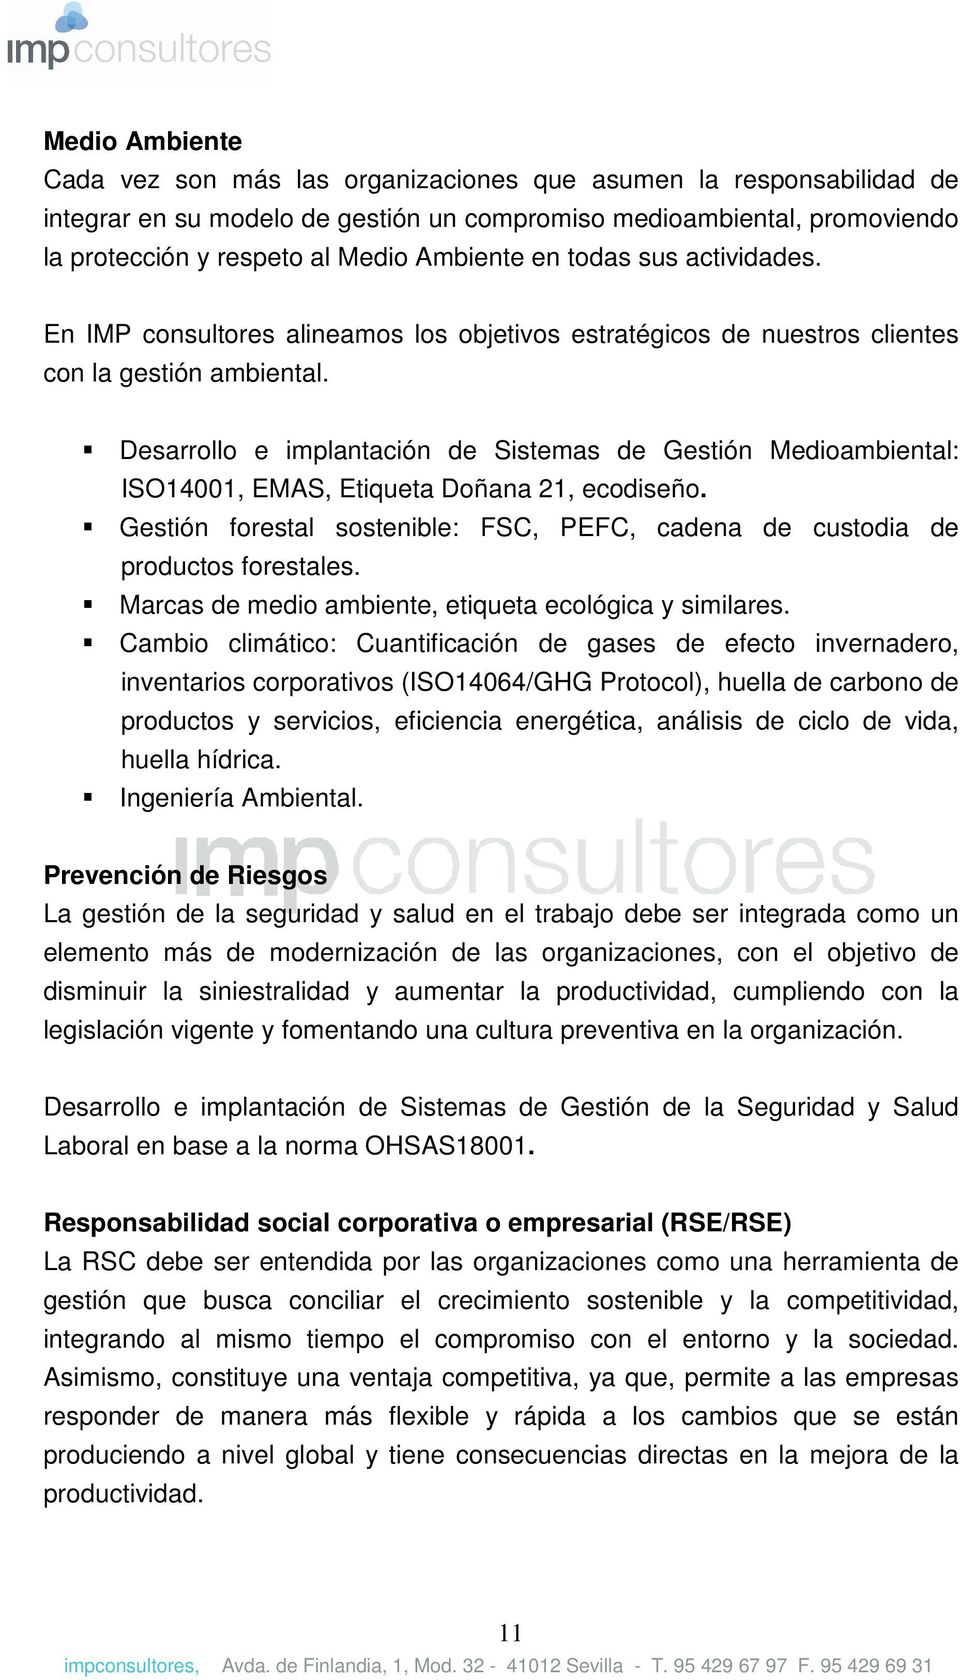 Desarrollo e implantación de Sistemas de Gestión Medioambiental: ISO14001, EMAS, Etiqueta Doñana 21, ecodiseño. Gestión forestal sostenible: FSC, PEFC, cadena de custodia de productos forestales.